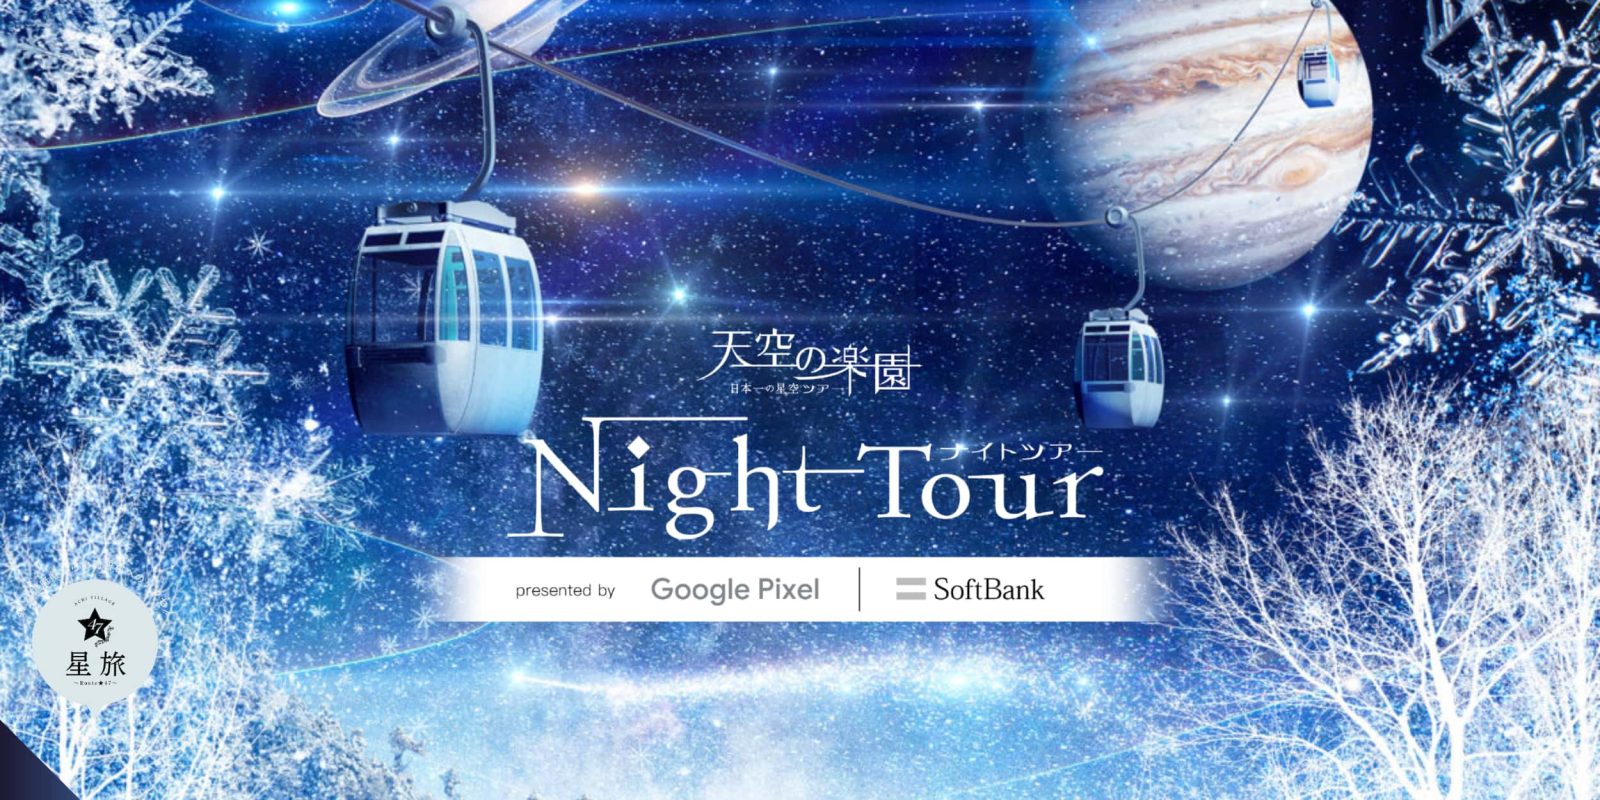 Google Pixel Night Tour